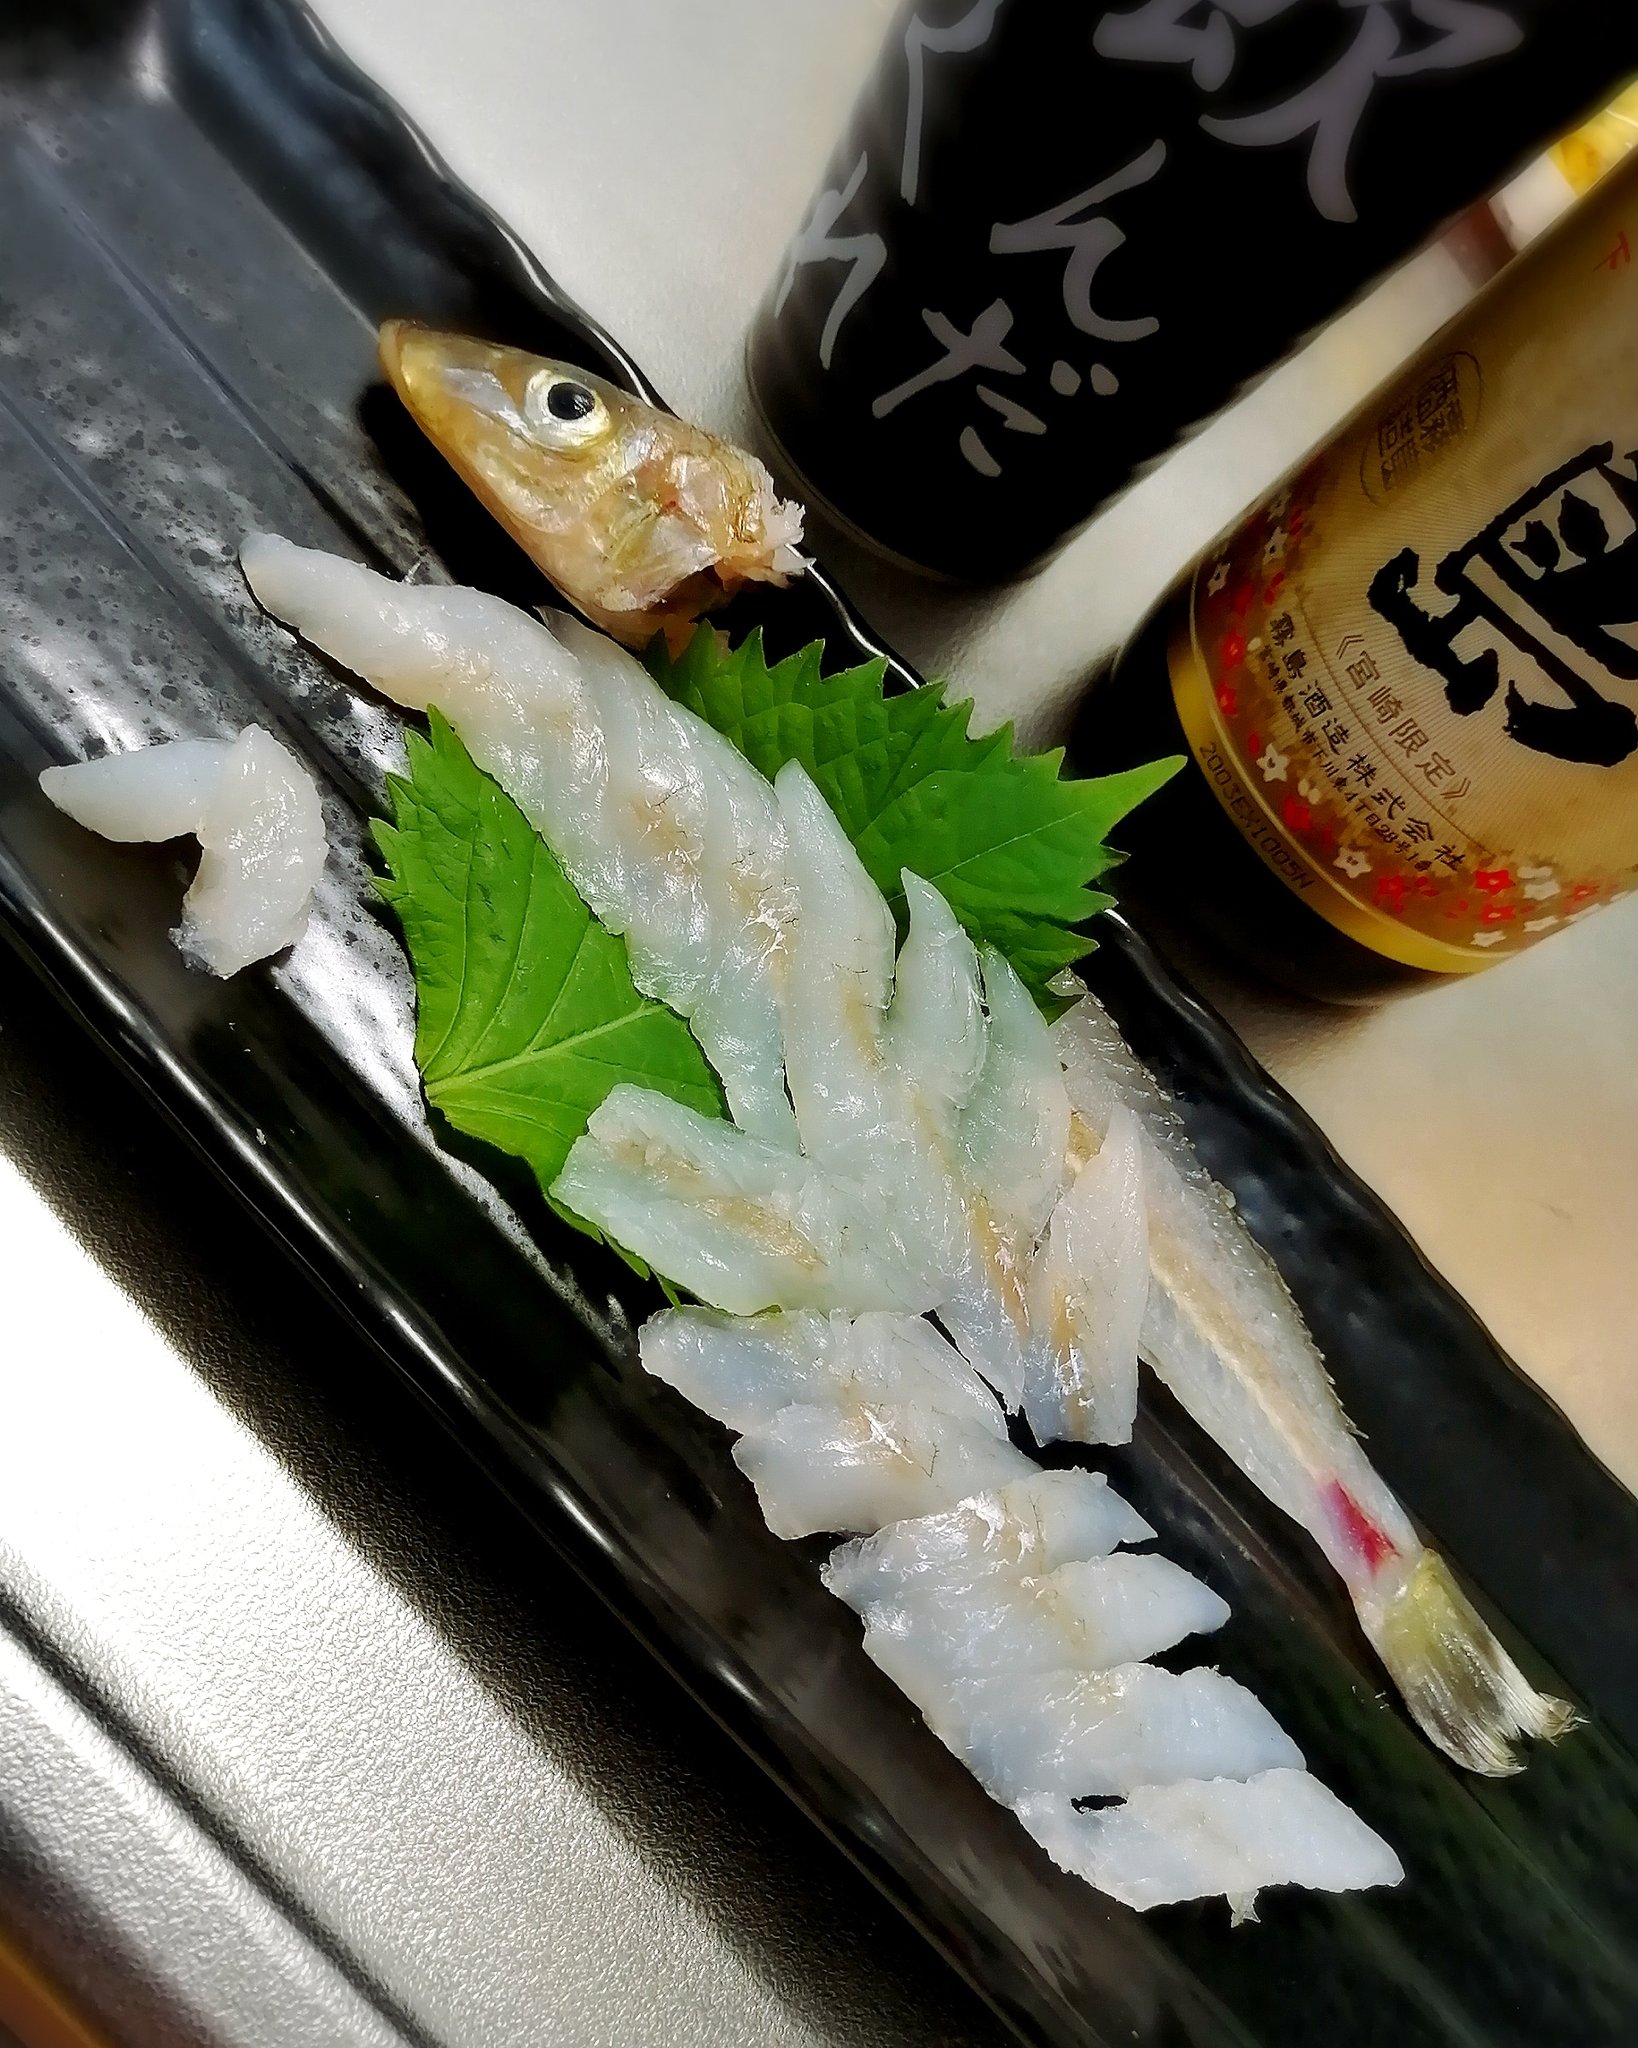 福嶋 亮太 夏の旬 釣りキスの刺身 天ぷらもいいけど 刺身も旨味あって白身で最高だよん ポン酢 醤油で2度美味しい シロギス 鱚 釣り 魚 刺身